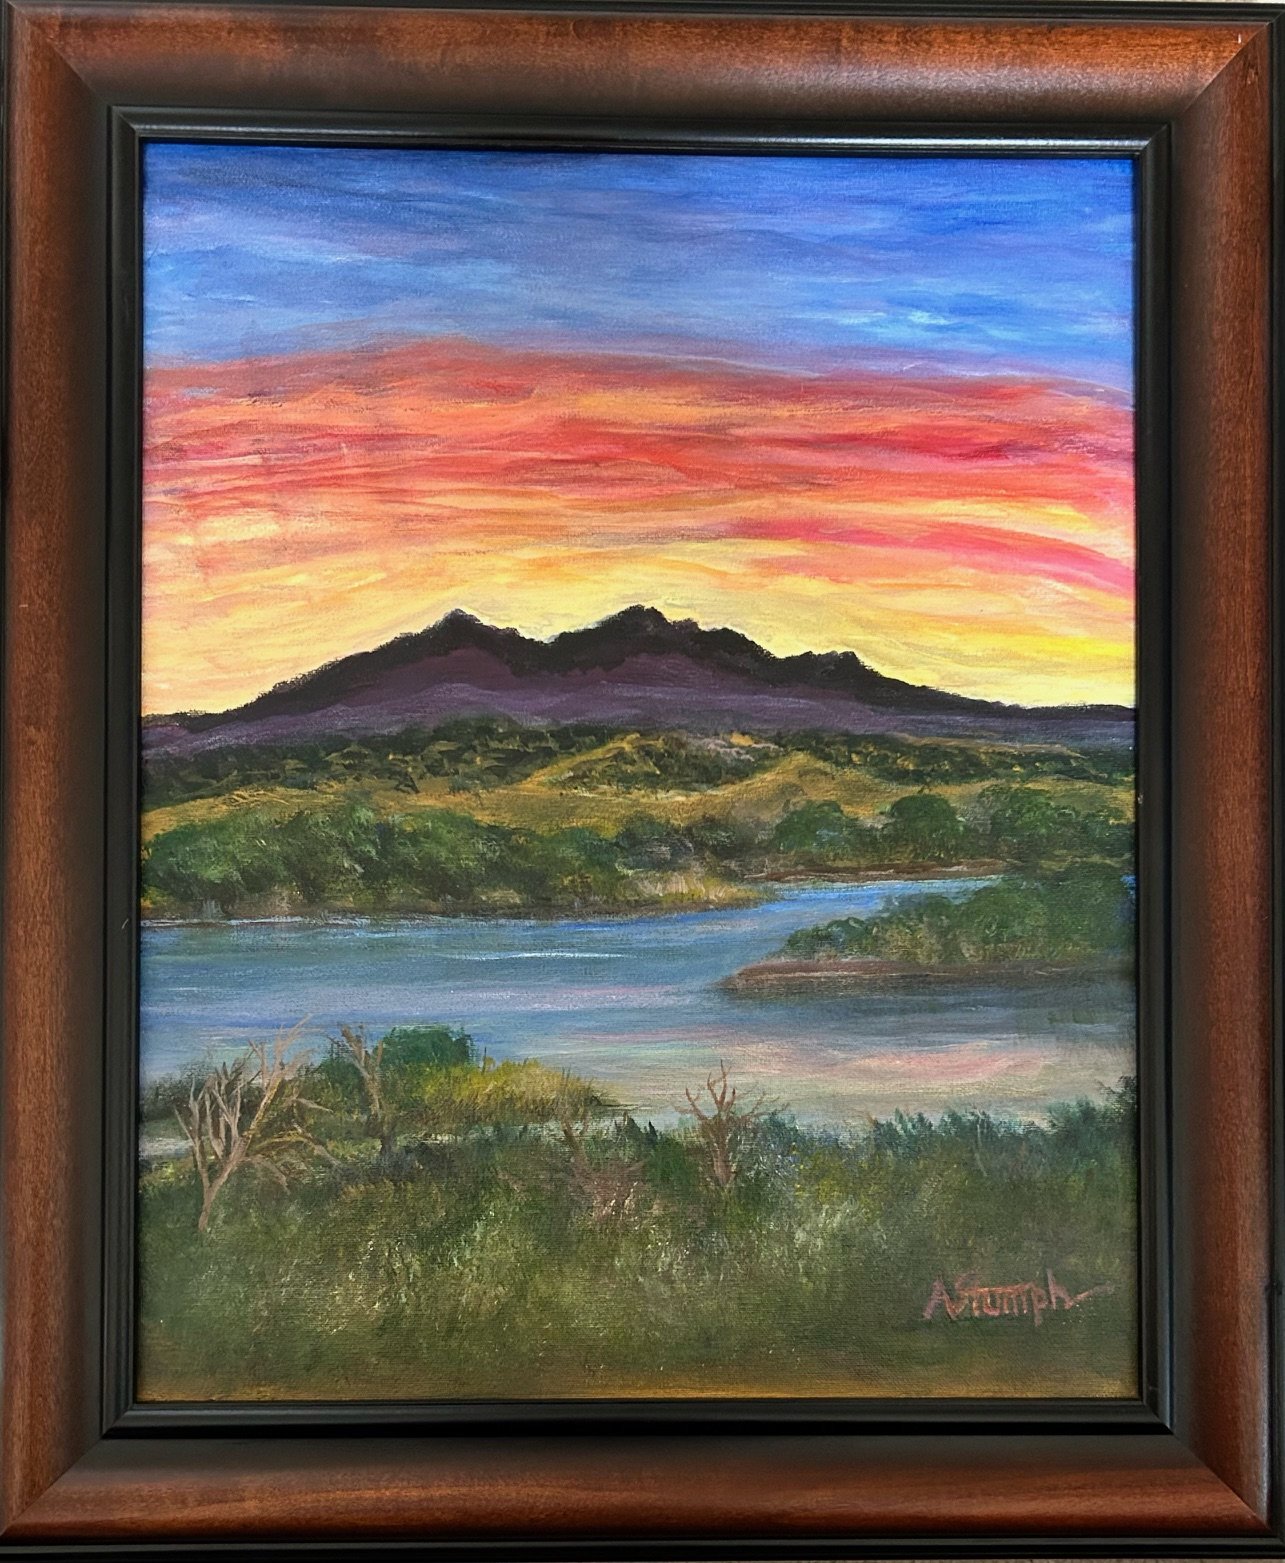 ARLSTU006 - Mount Diablo by Arlene Stumph.jpeg